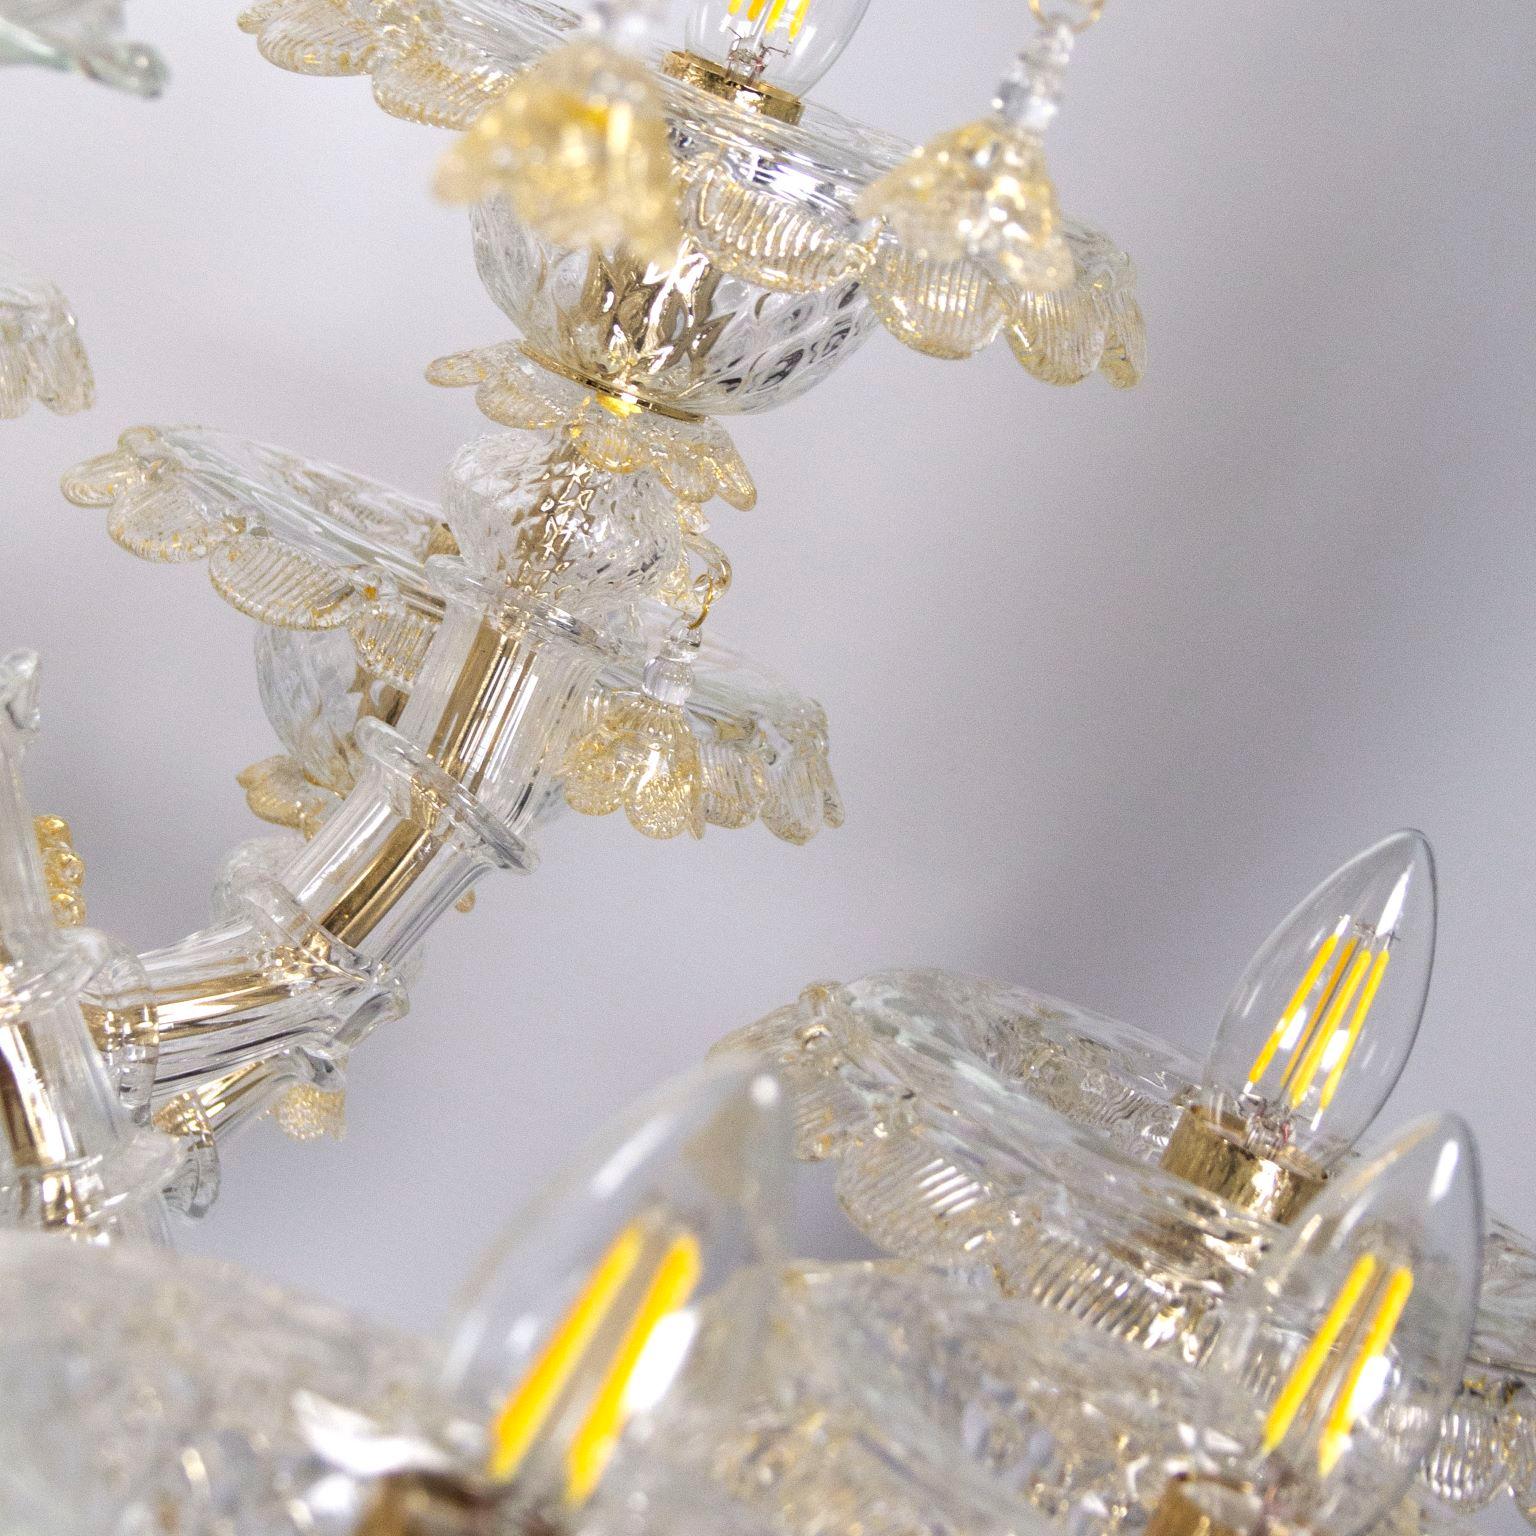 Luxuriöser Rezzonico-Kronleuchter mit 12+3 Armen, Kristallglas und goldenen Details von Multiforme.
Dieser Kronleuchter erinnert an die Pracht vergangener Jahrhunderte. Es handelt sich um ein immergrünes Modell, ein klassisches Produkt, das von